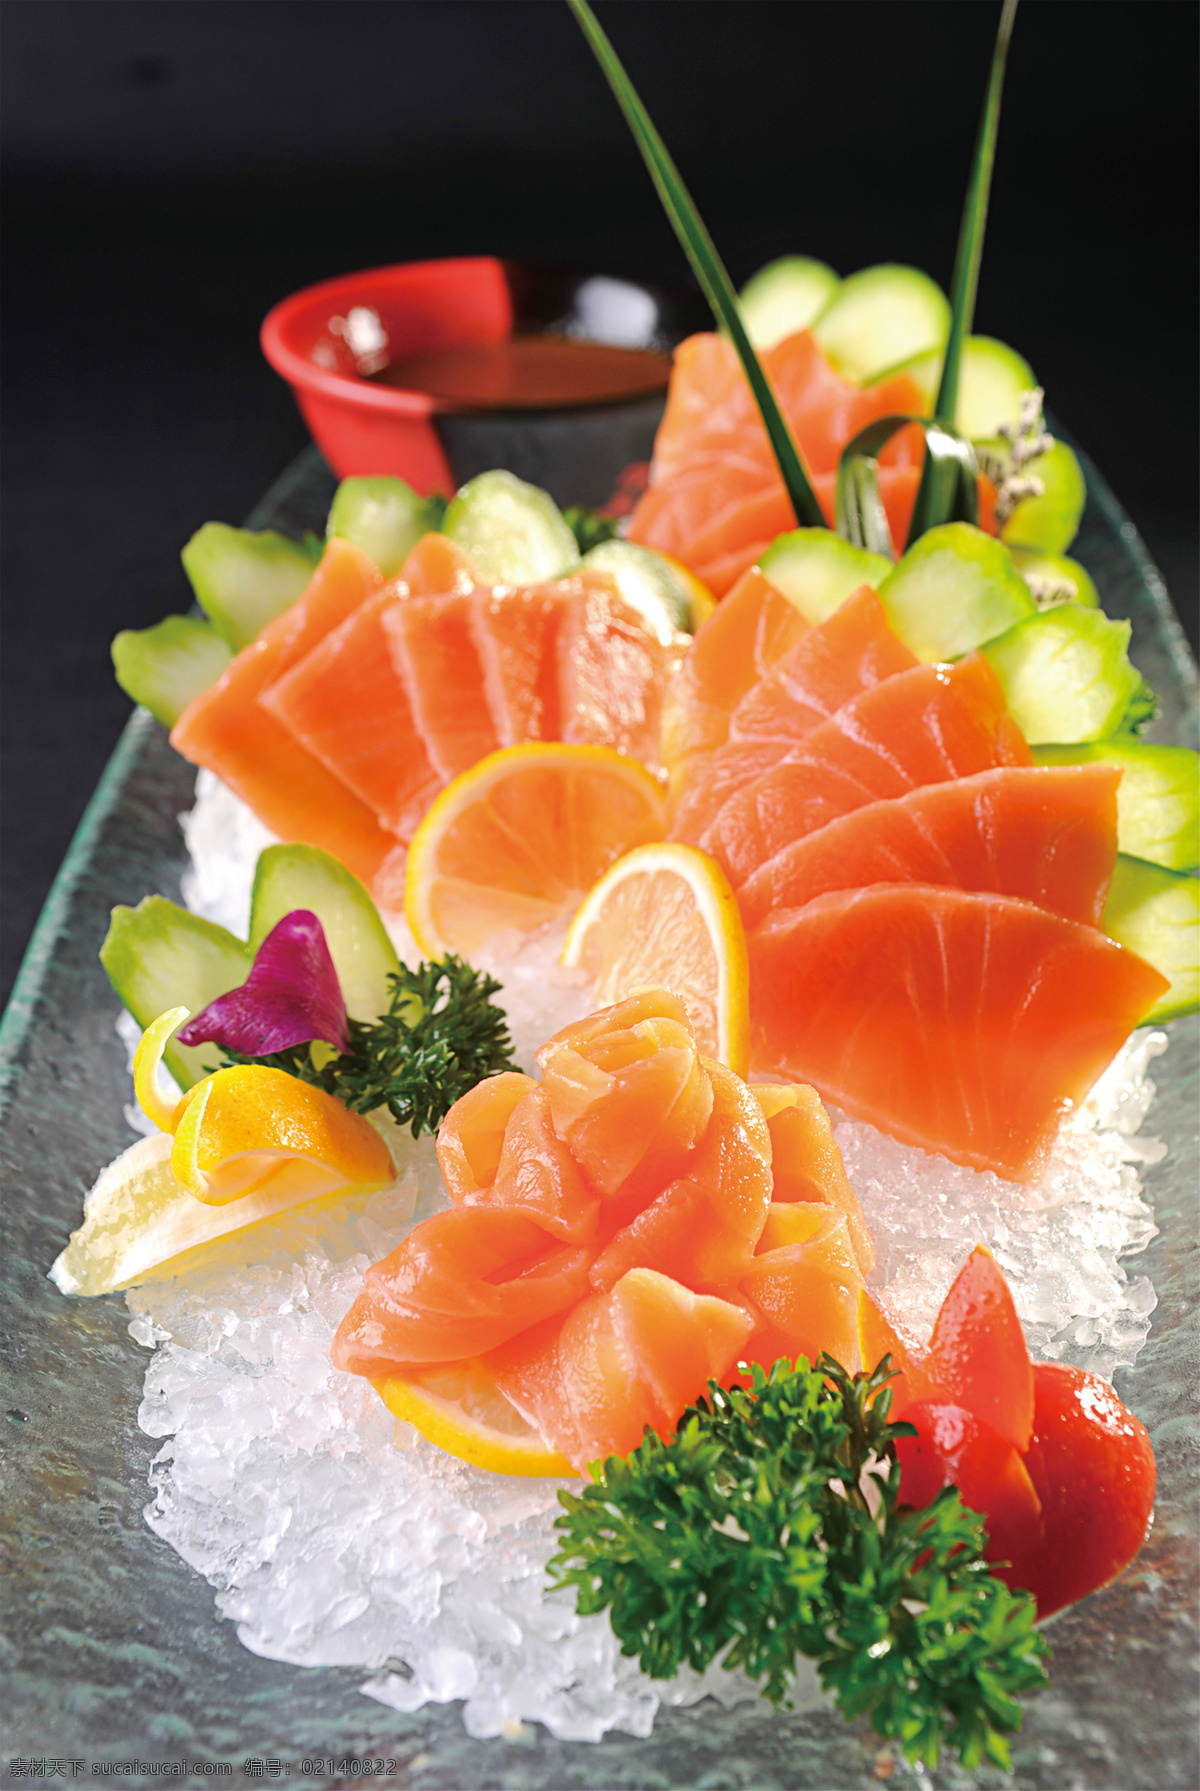 刺身三文鱼 美食 传统美食 餐饮美食 高清菜谱用图